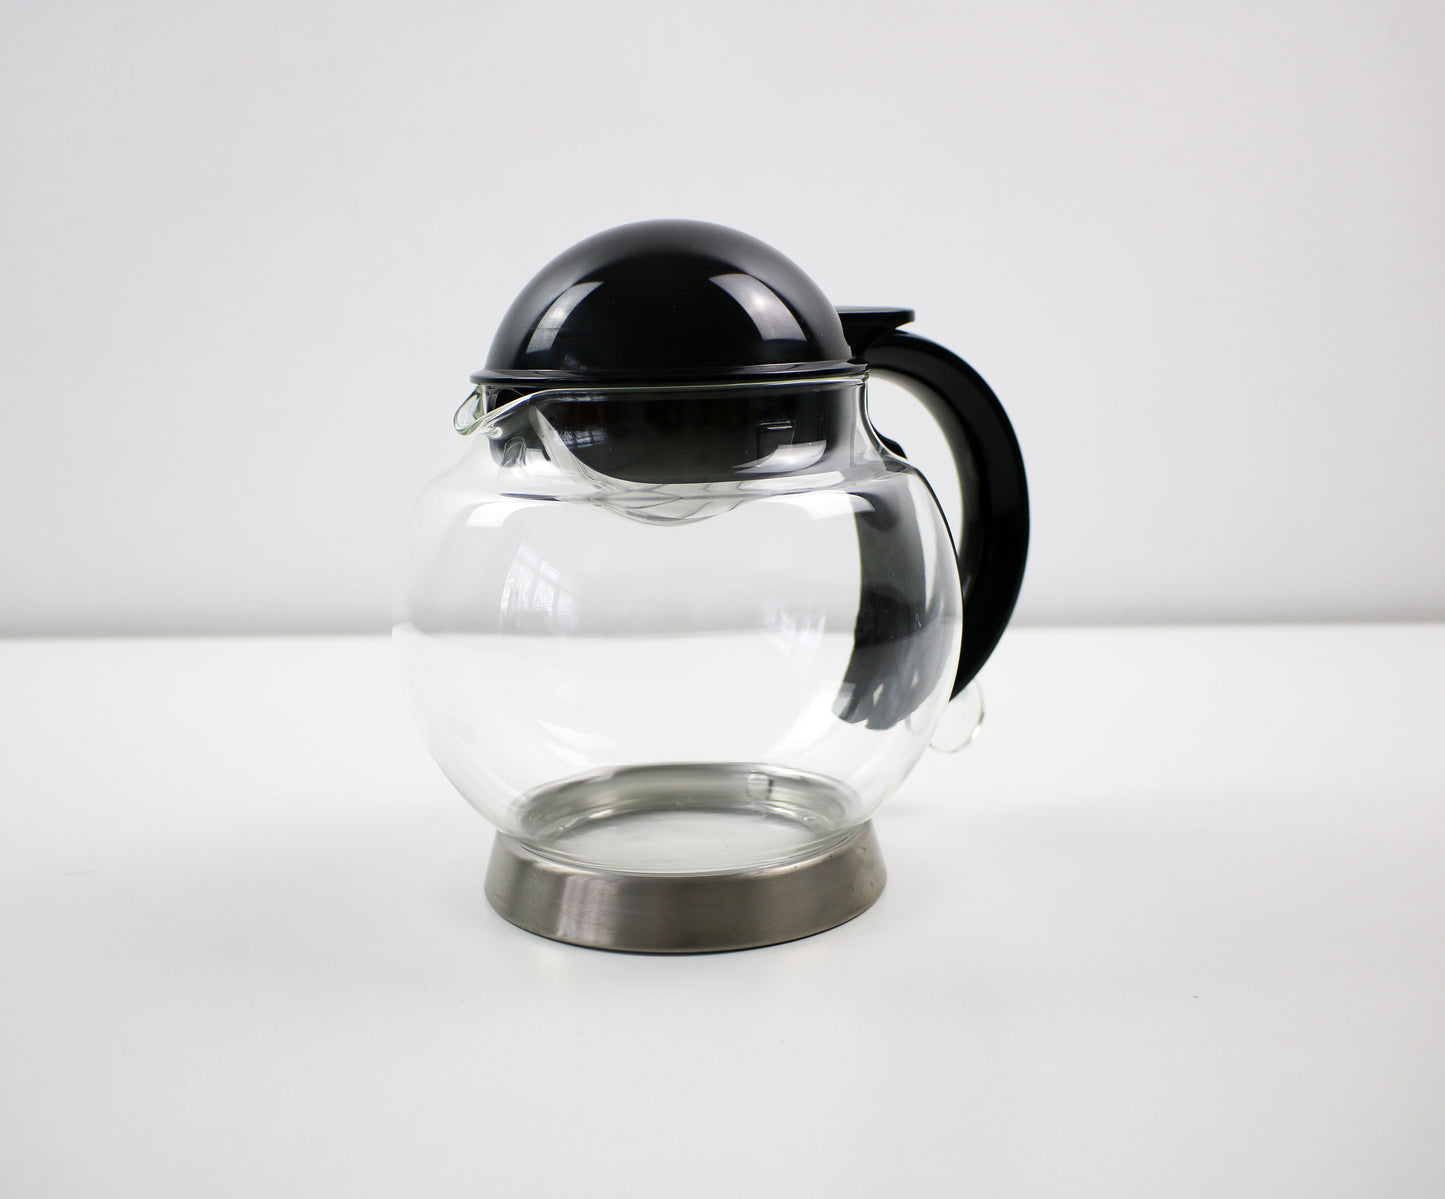 Emsa Tea Master teapot with infuser - 2000 vintage unused